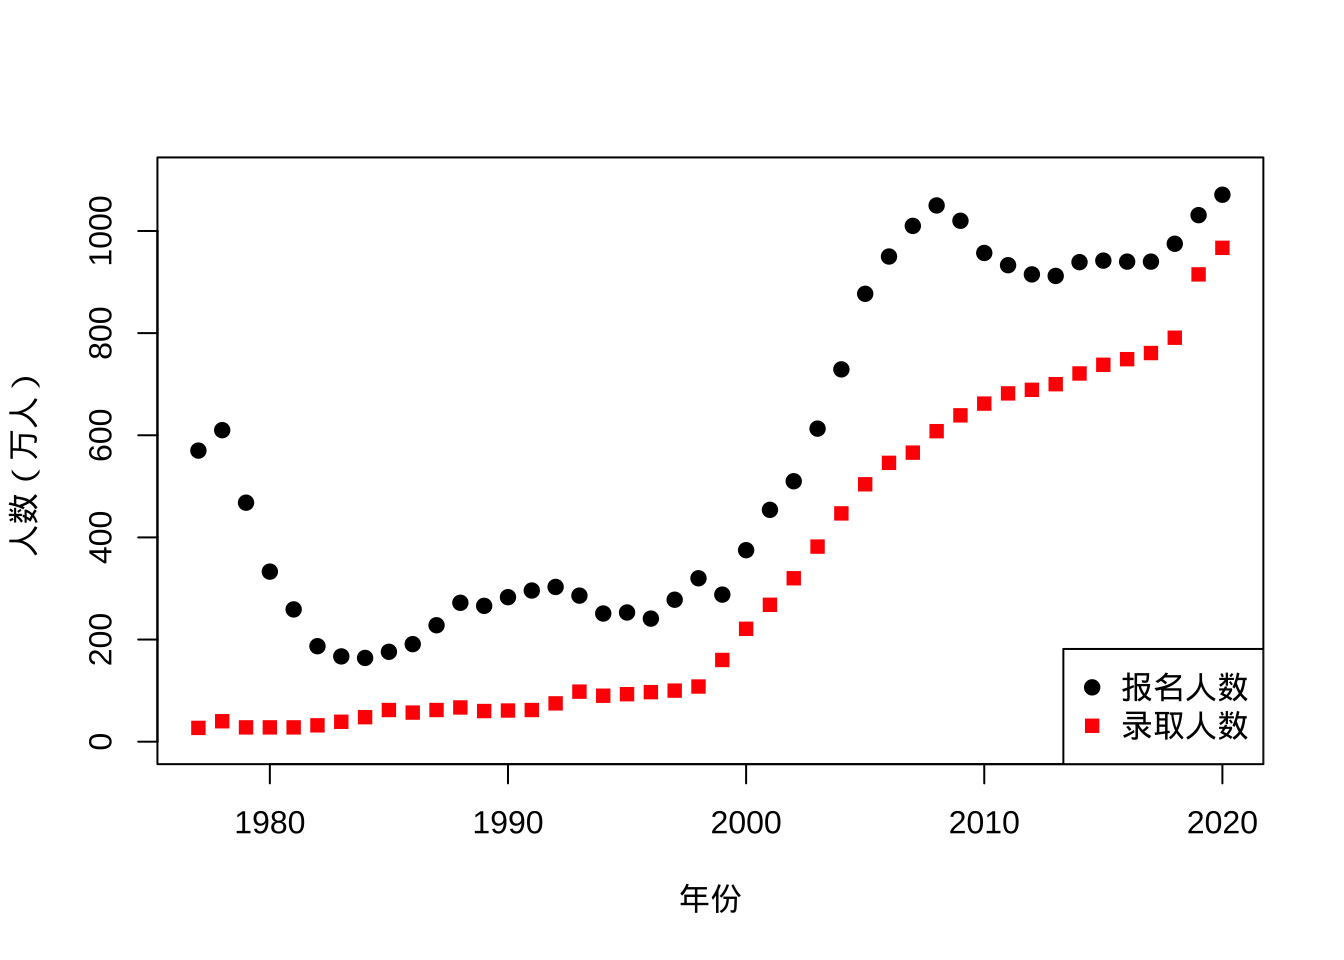 中国高考报名与录取人数变化